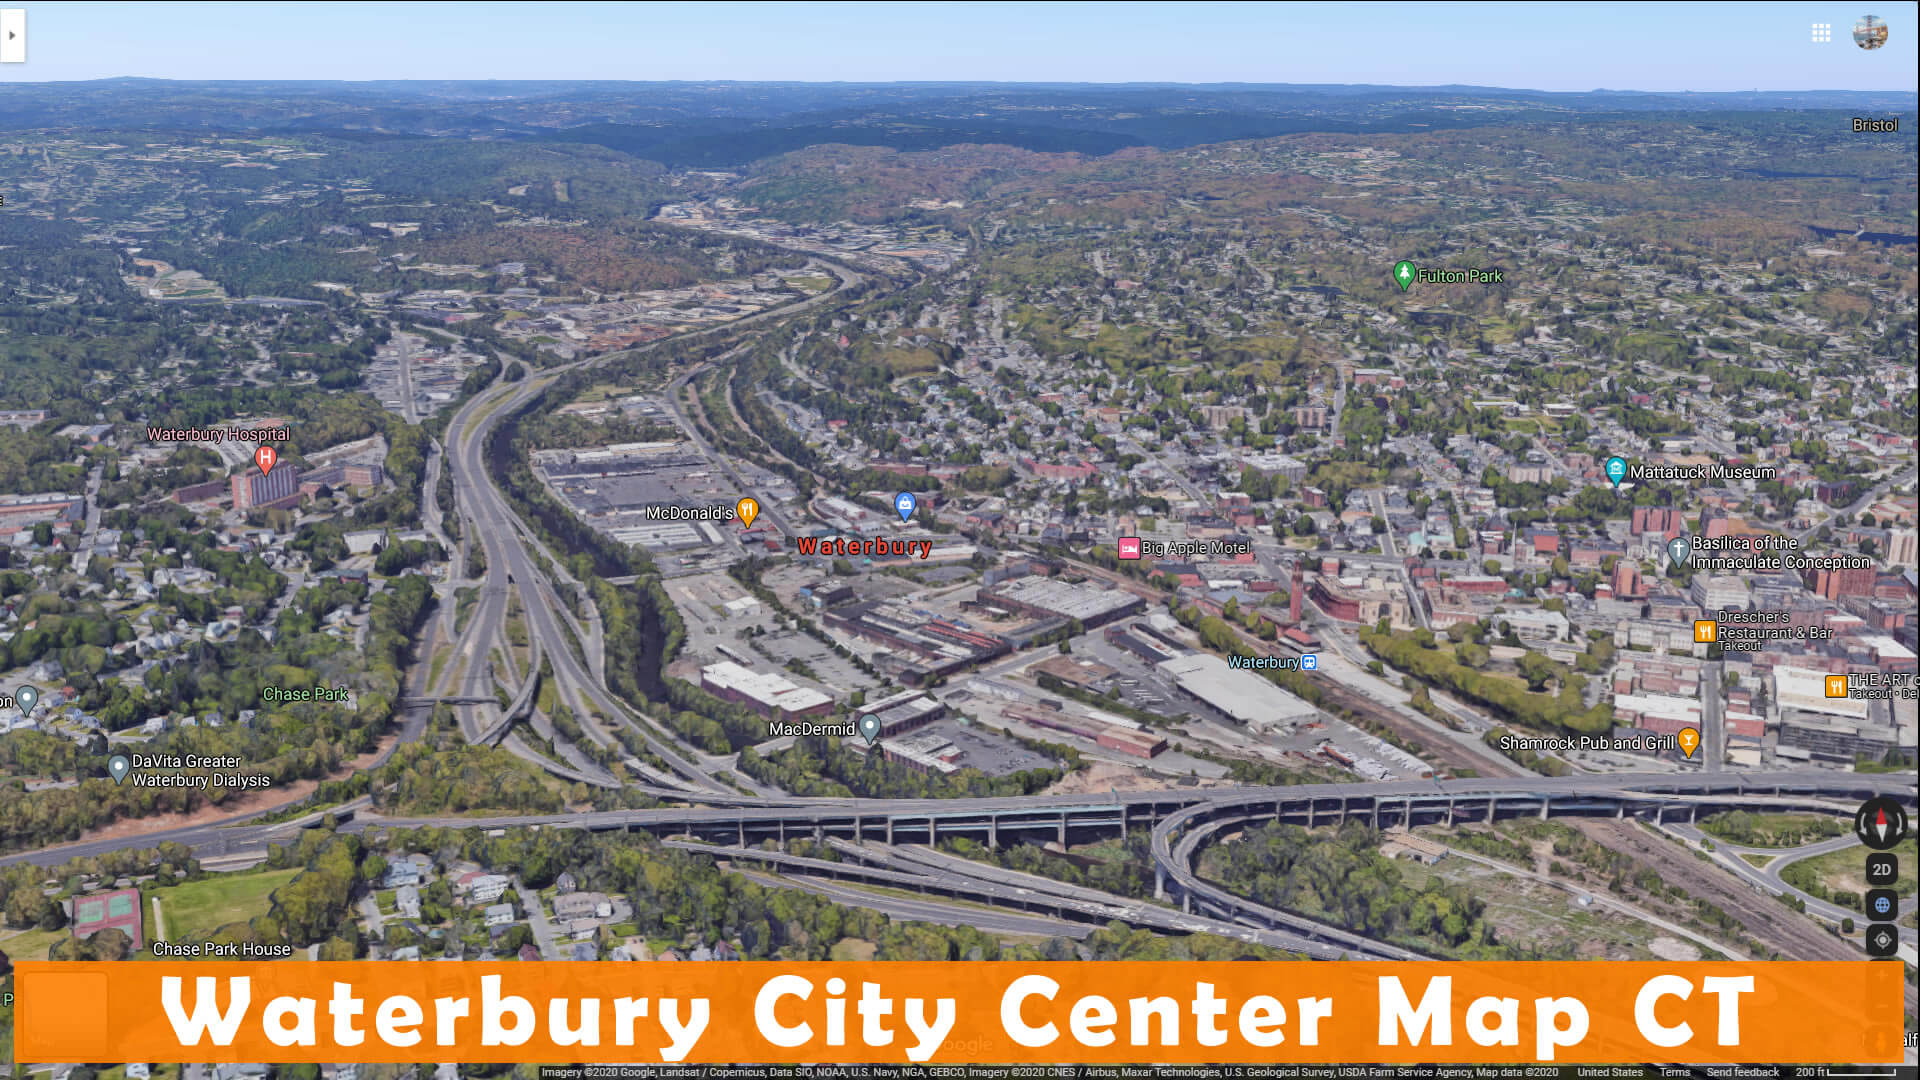 Waterbury City Center Map CT